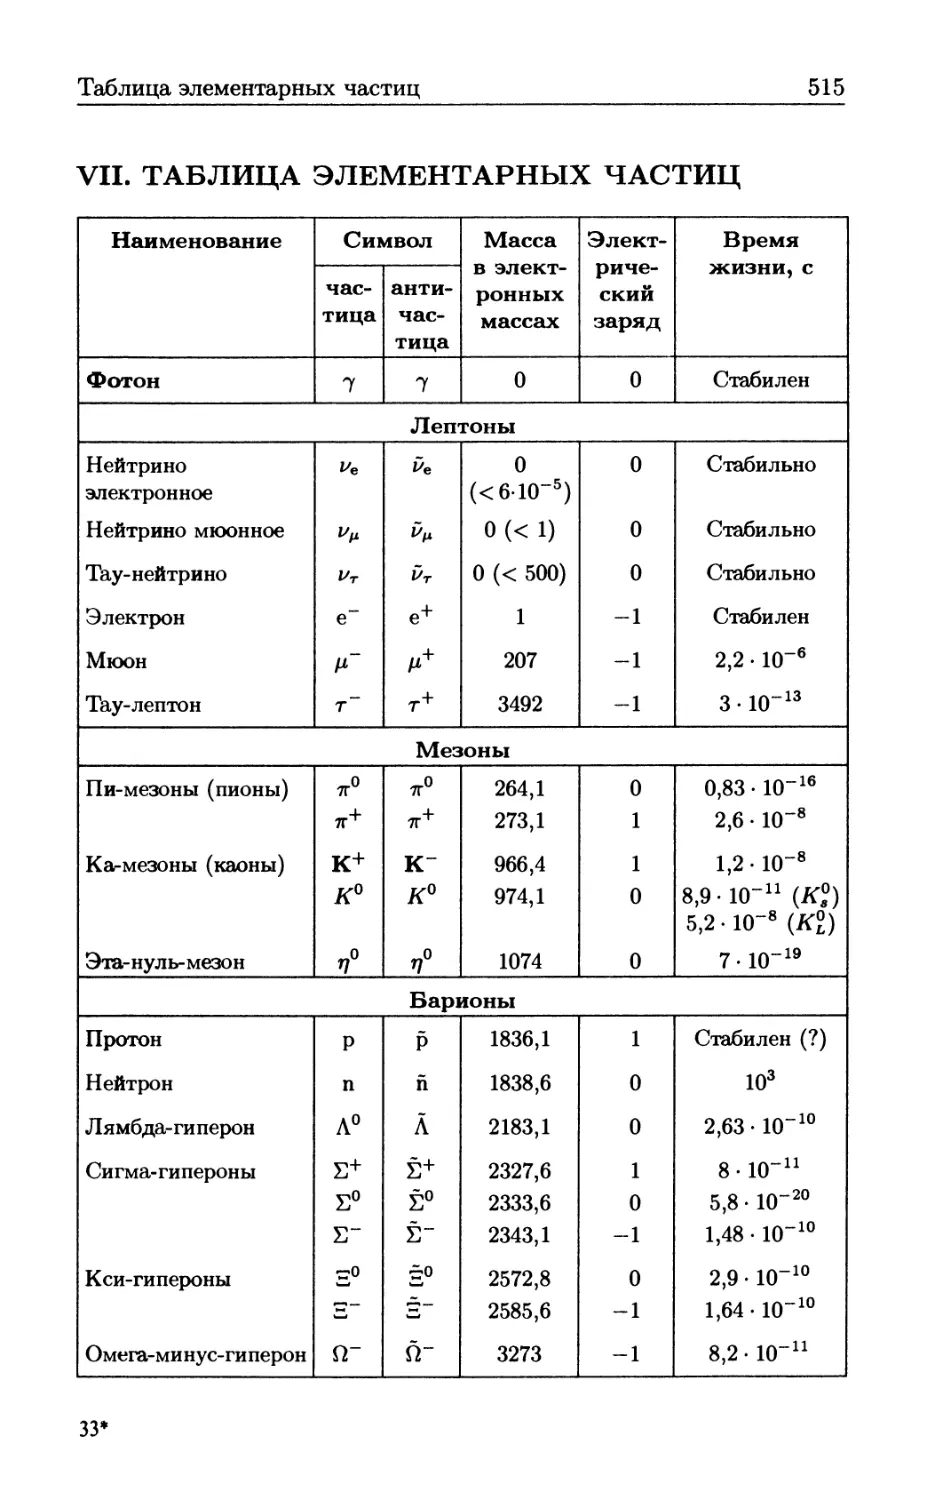 VII Таблица элементарных частиц